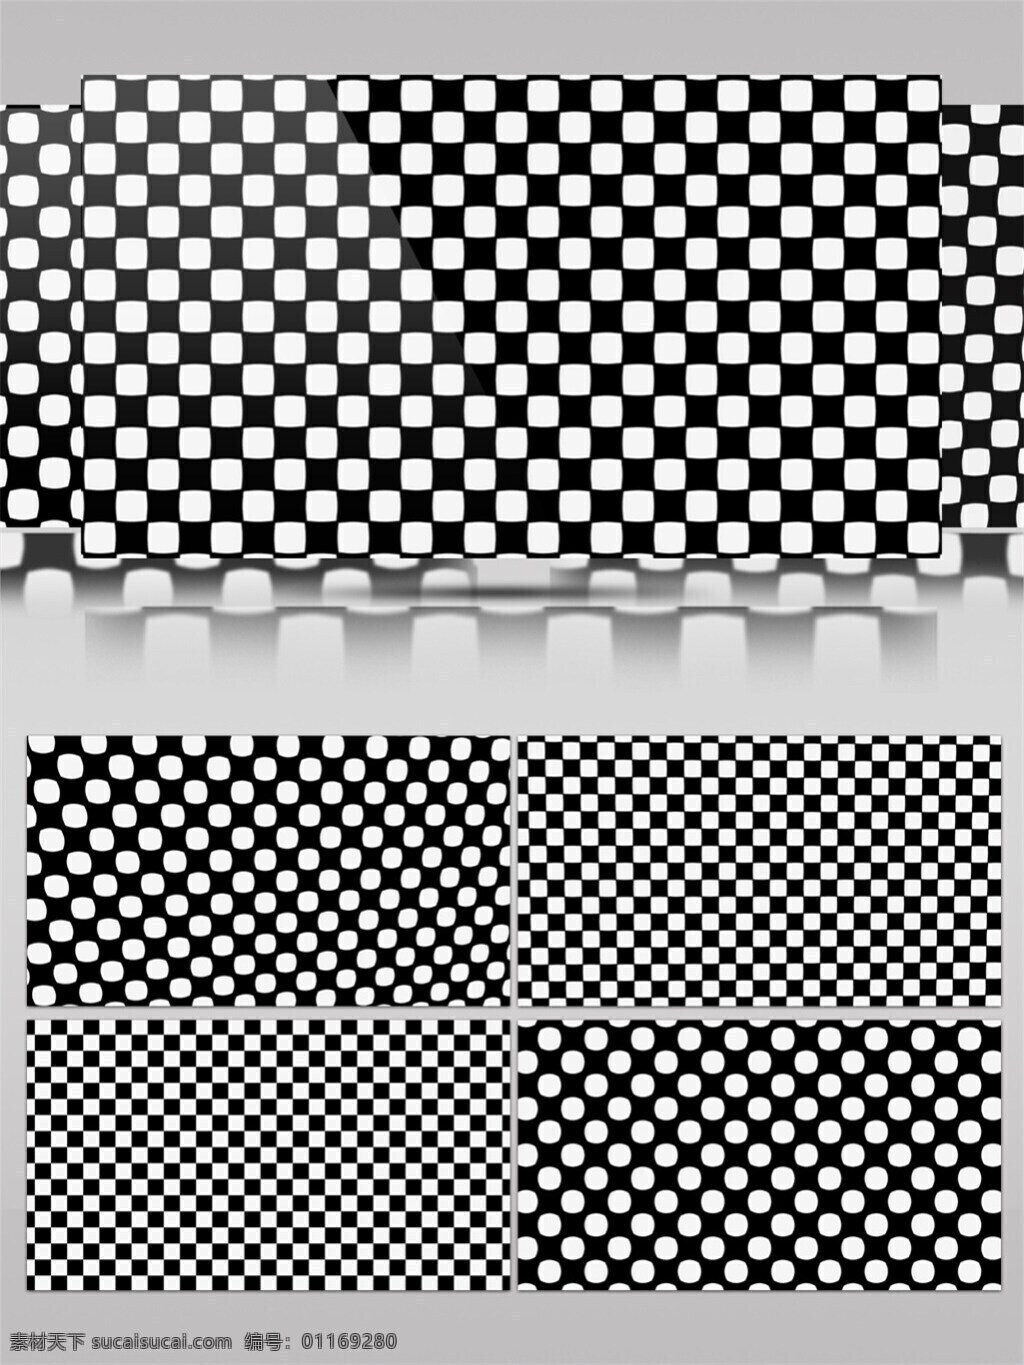 黑白 光点 高清 视频 vj灯光 斑驳黑白 壁纸图案 动态展示 背景 立体几何 装饰风格